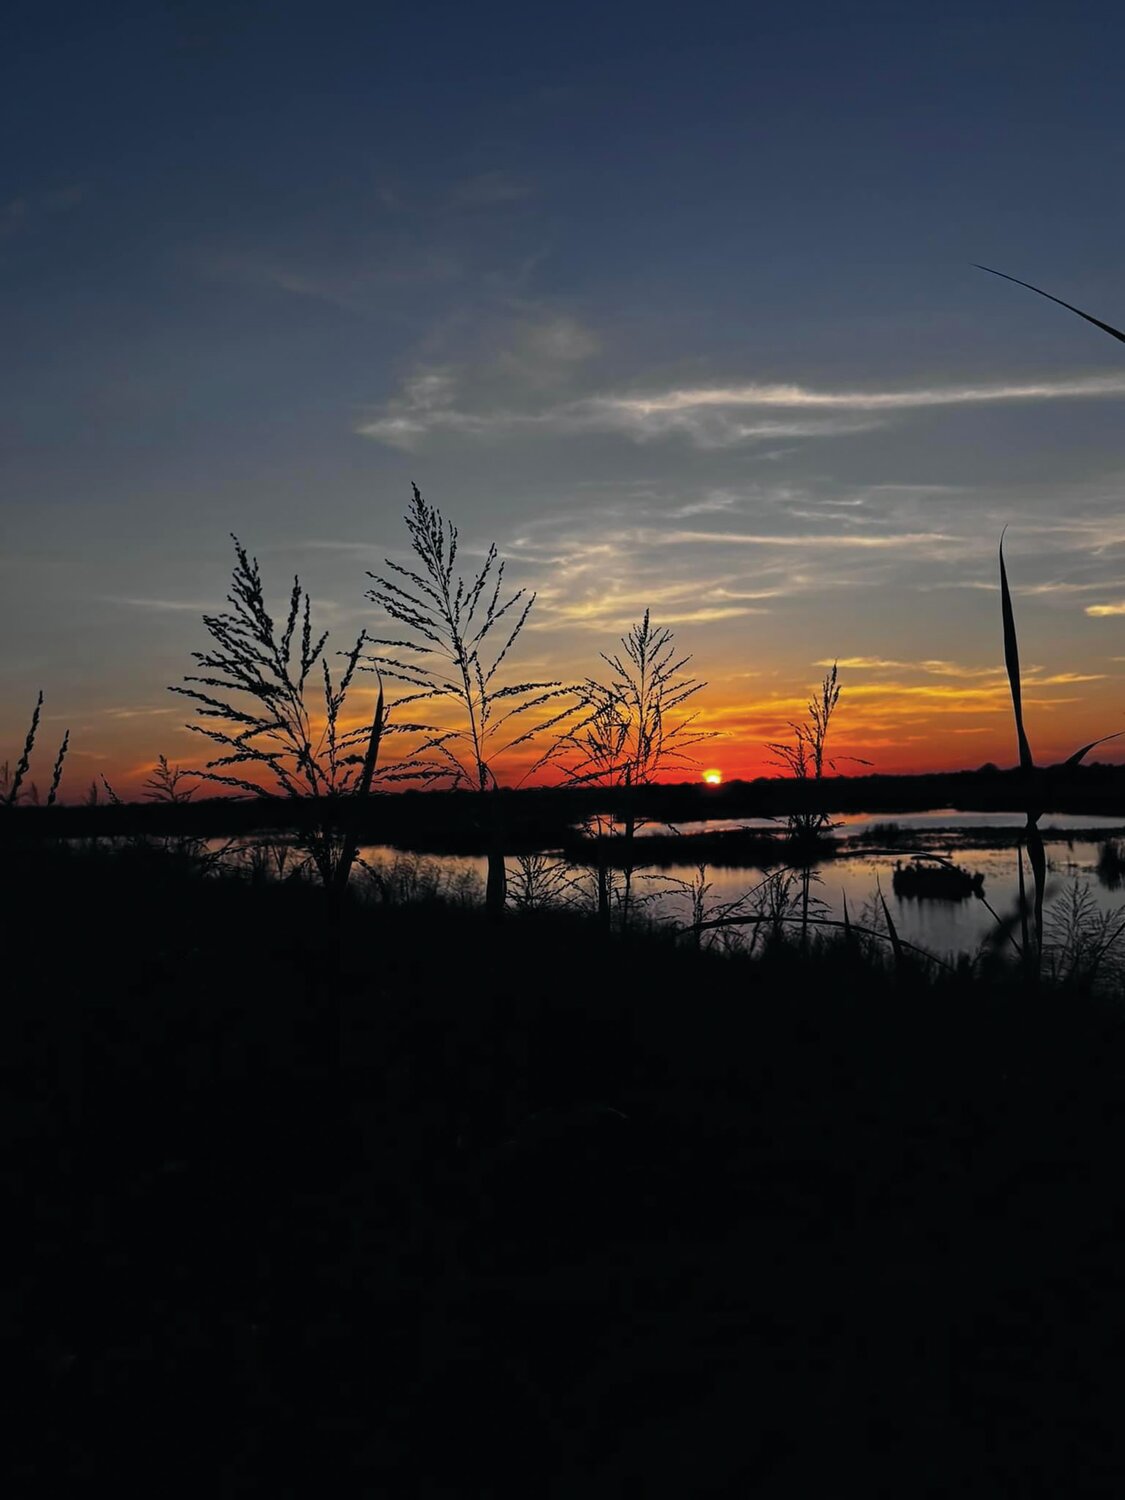 April Martin took this Sunset on Lake Okeechobee photo at Lock 7 on Oct. 14, 2023.